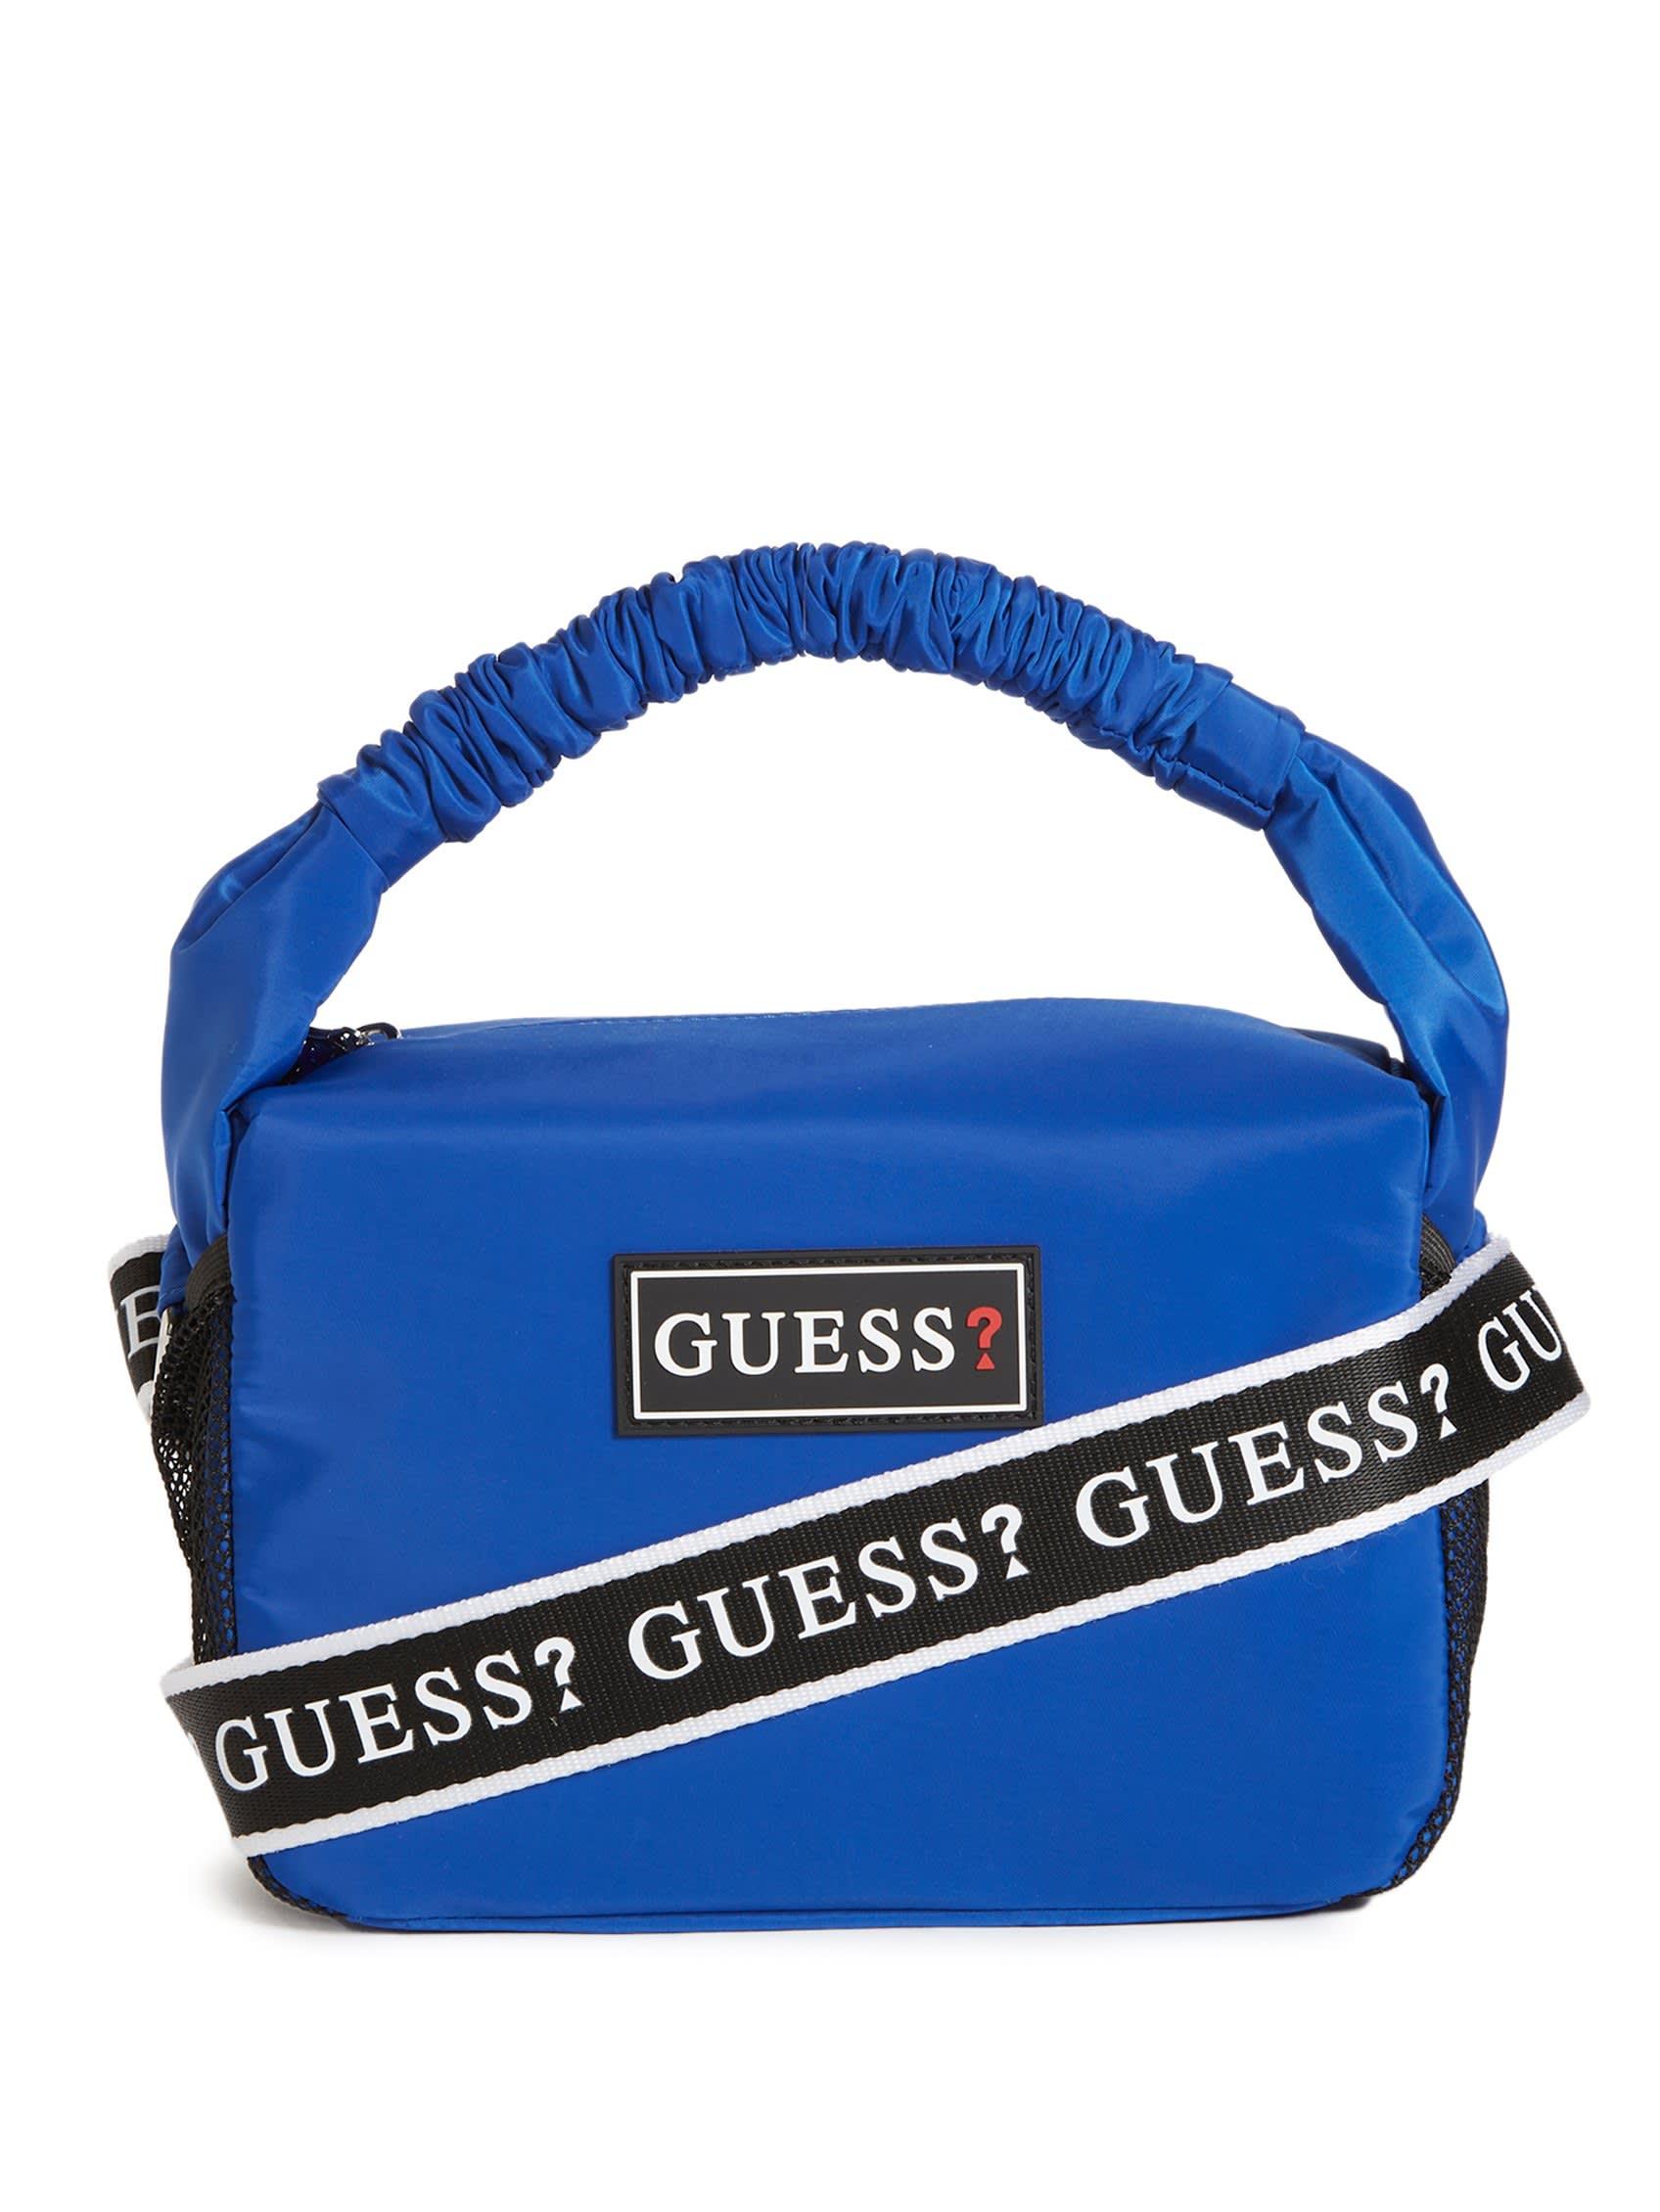 Guess Noelle Handbag Blue